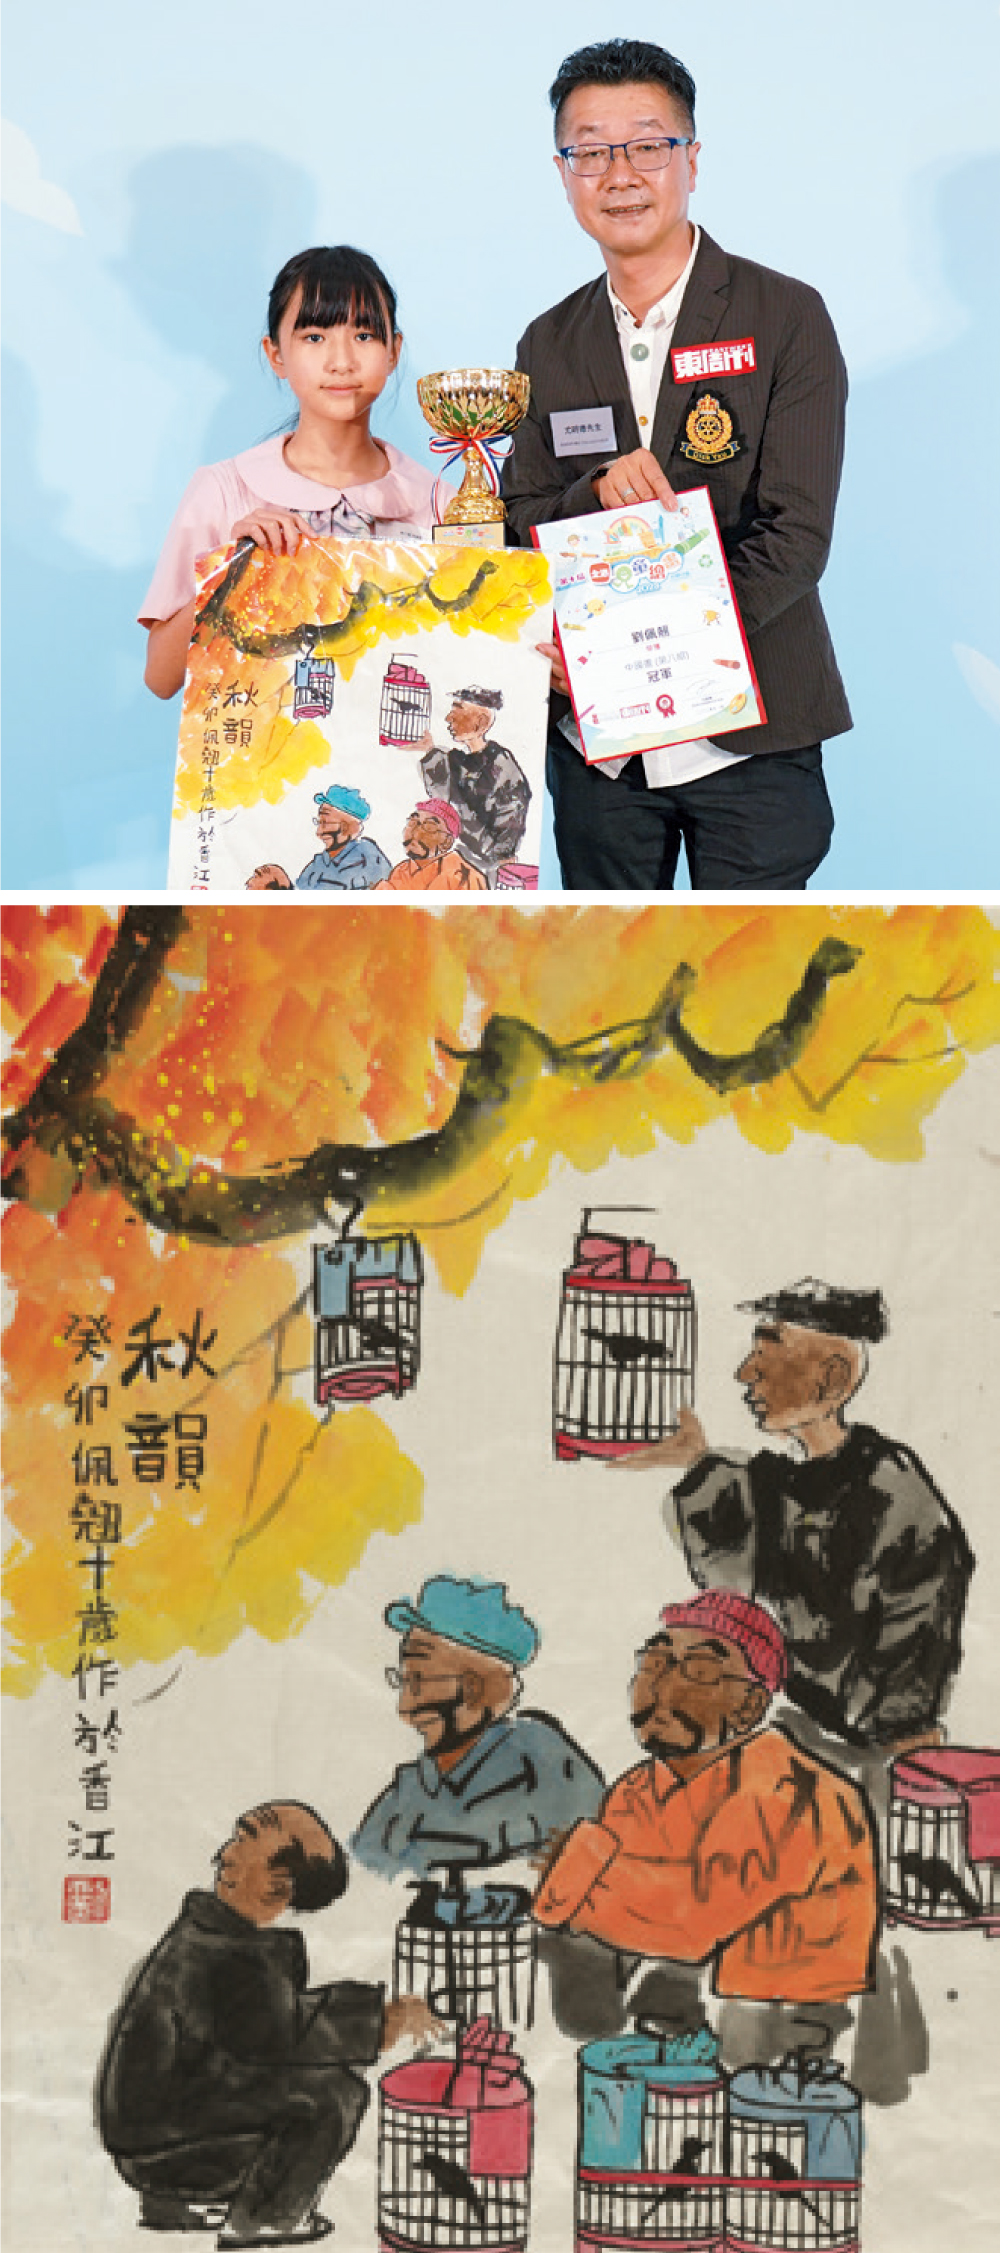 冠軍 劉佩翹 - 自小喜歡畫畫，而且尤其喜愛繪畫小動物，這次挑戰畫人物非常出色，將四位伯伯的神情及神態均表現得栩栩如生。